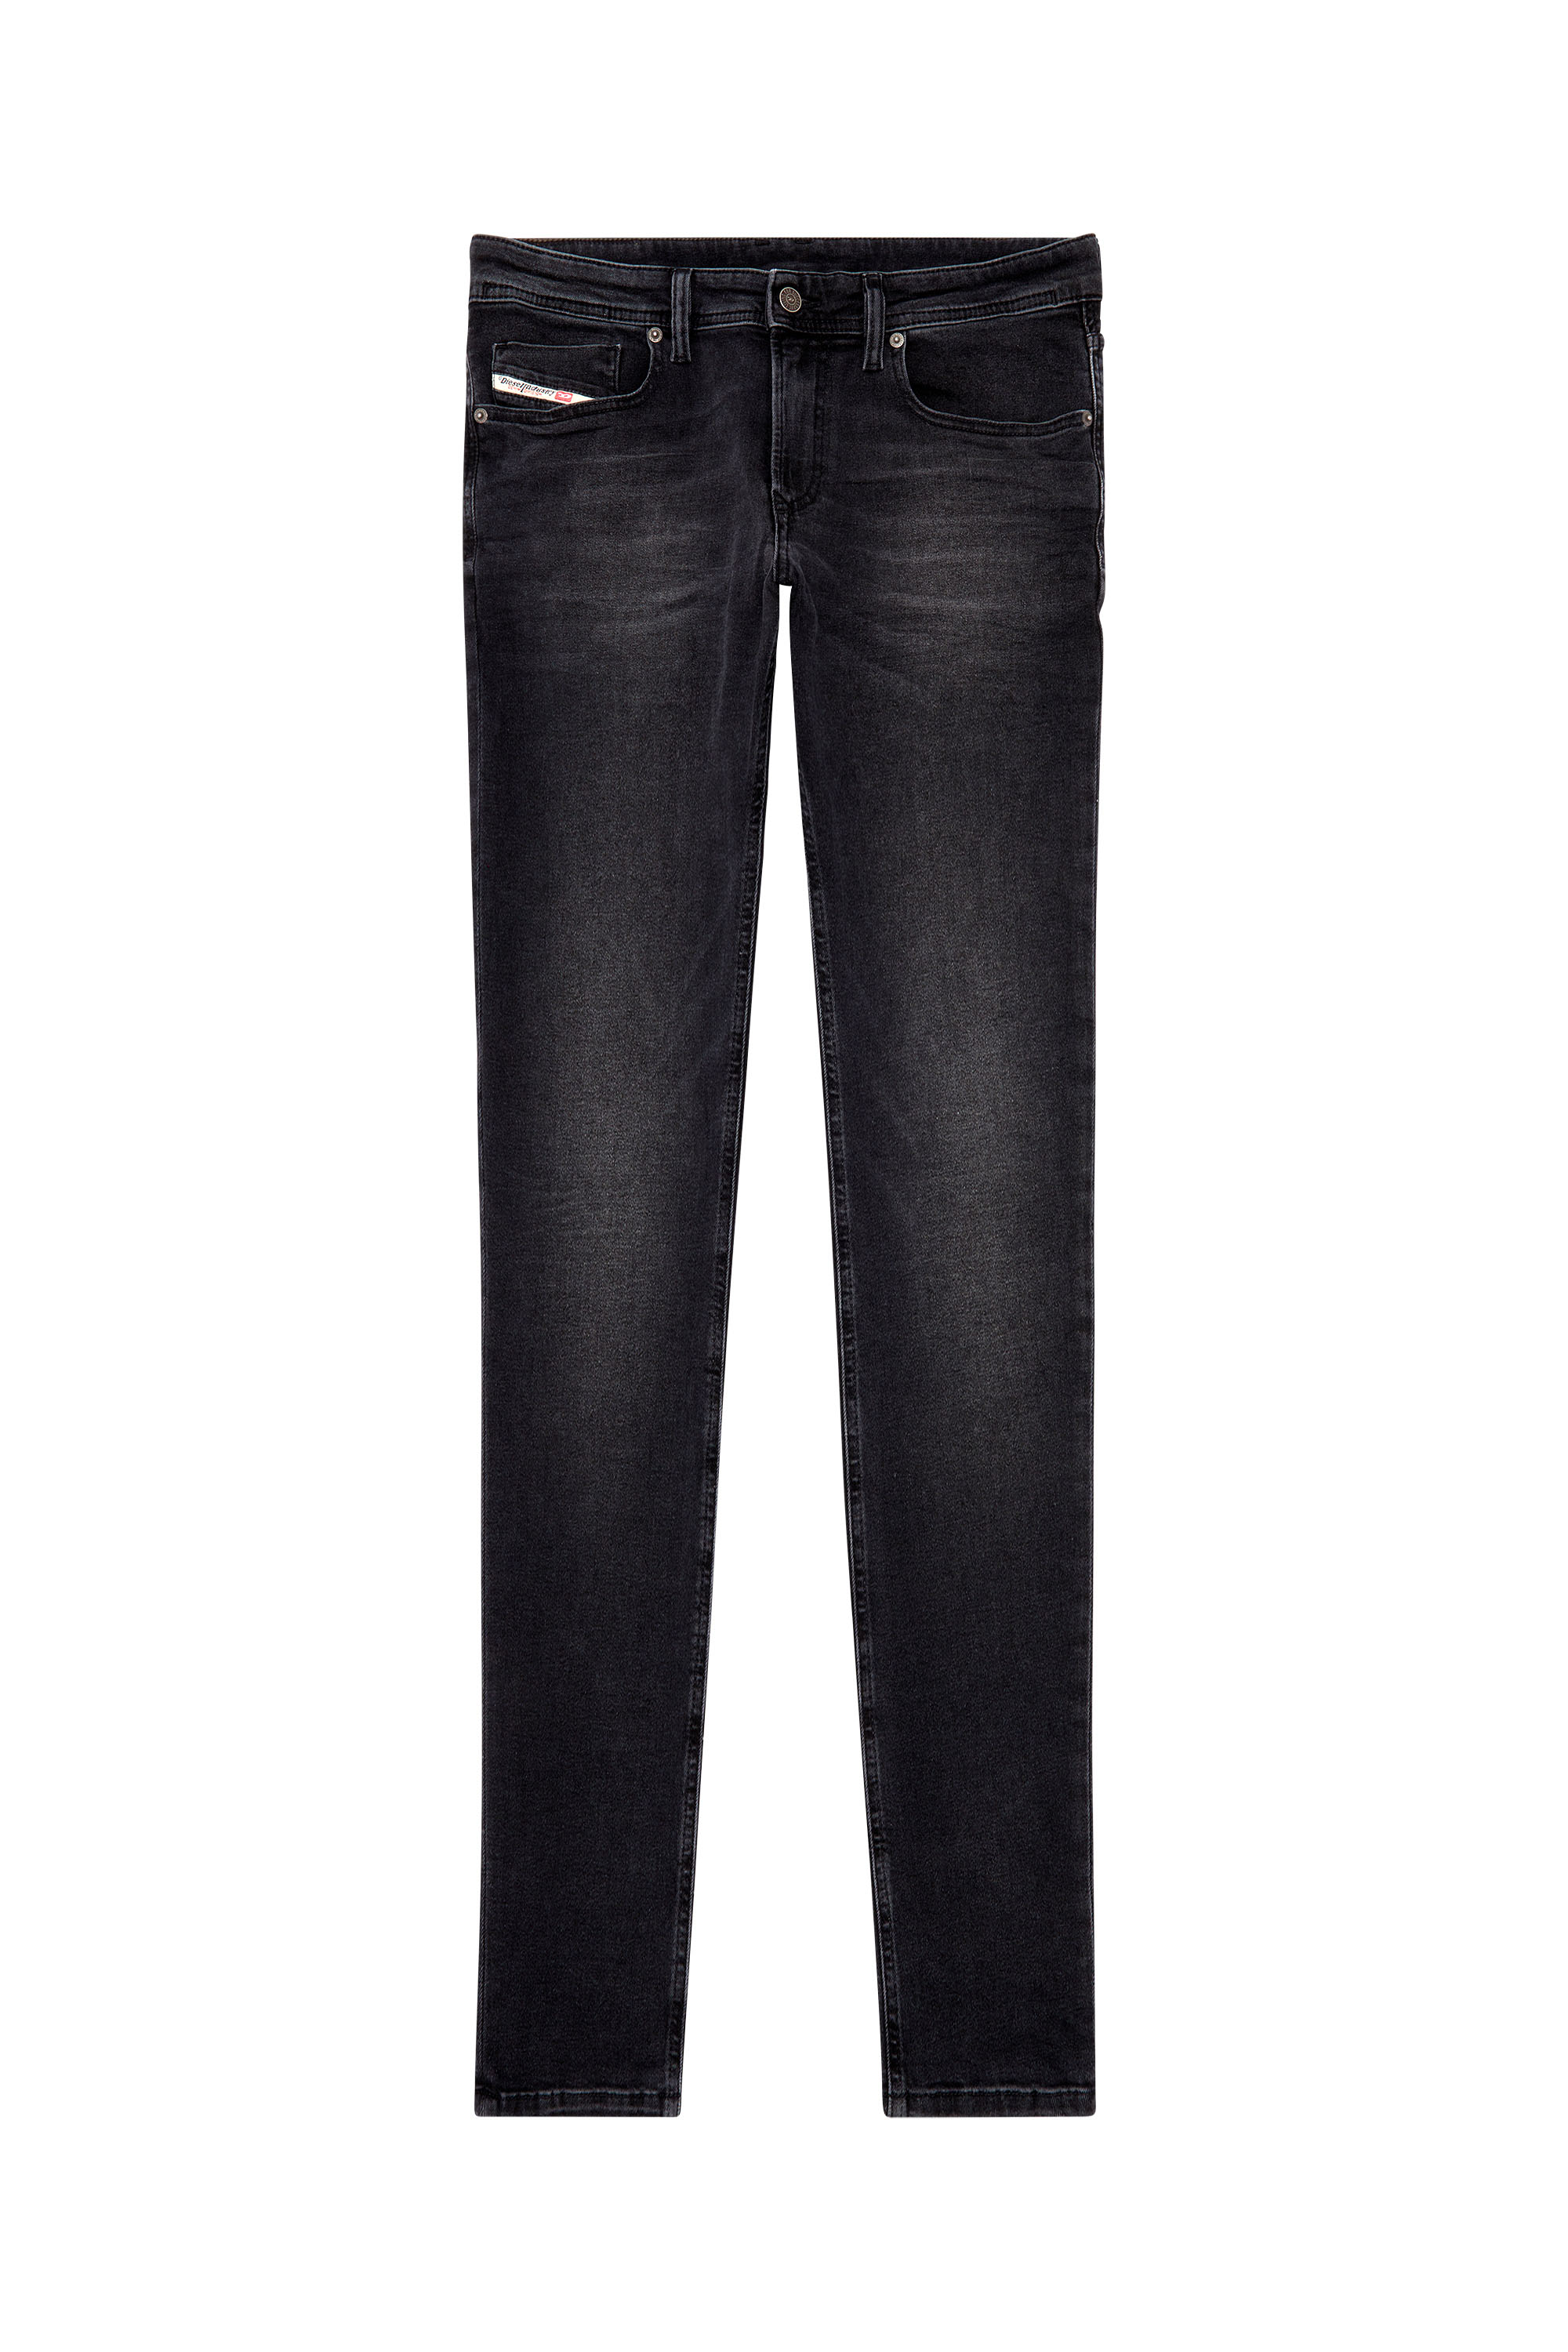 Diesel - Skinny Jeans 1979 Sleenker 0PFAS, Black/Dark grey - Image 3